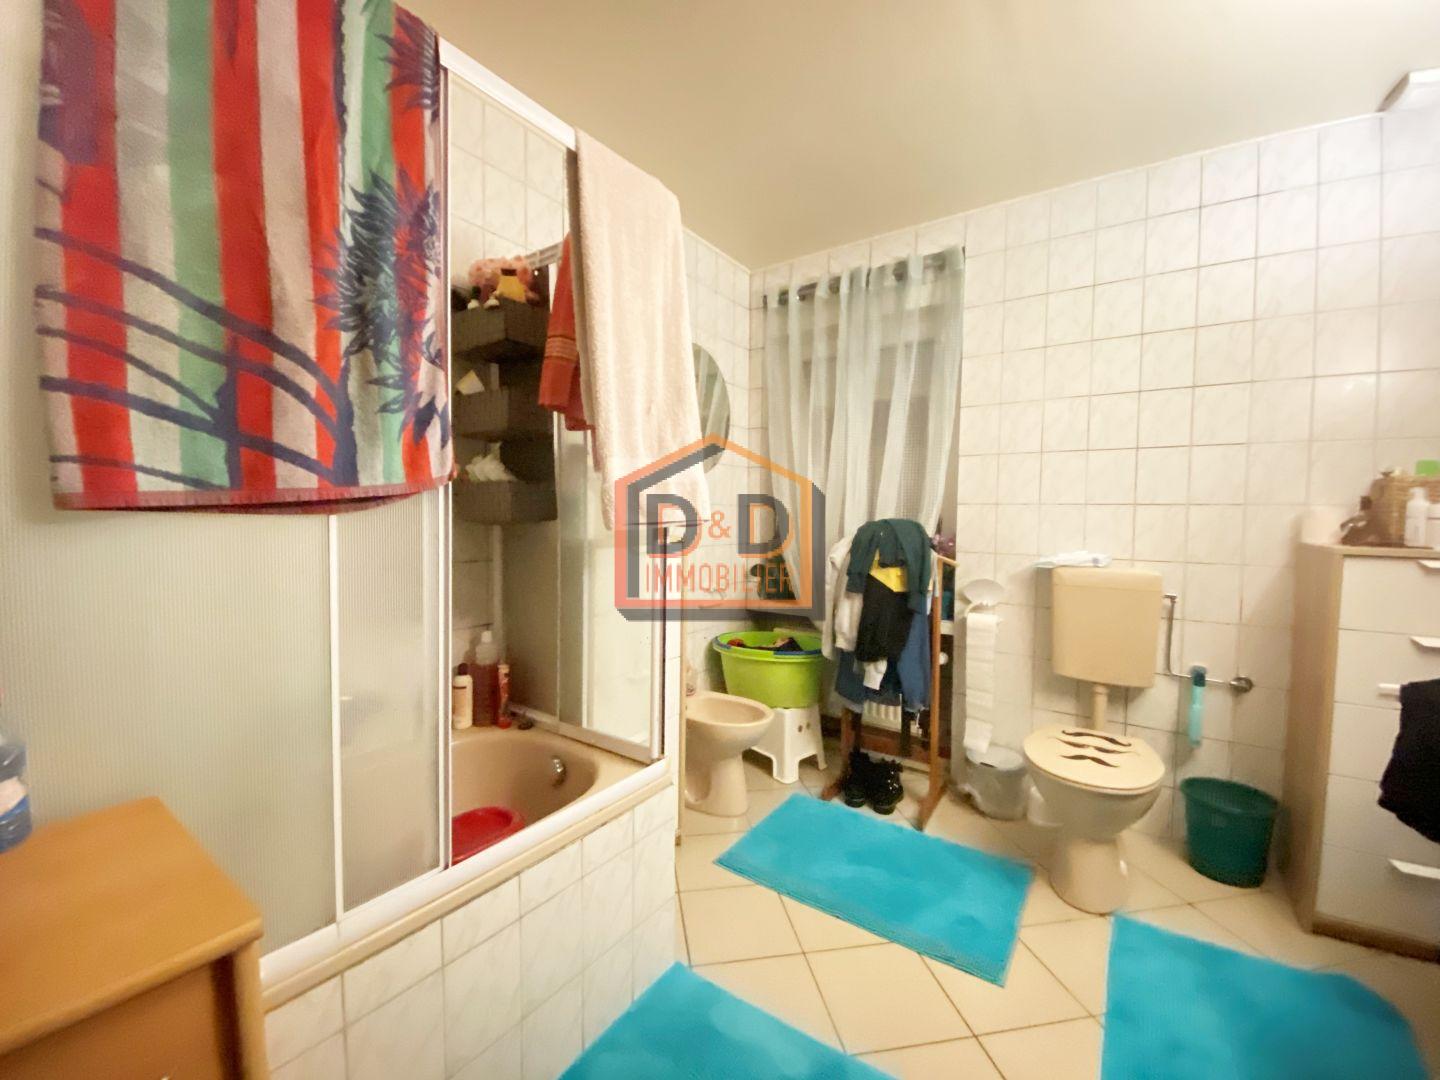 Appartement à Dudelange, 77 m², 2 chambres, 1 salle de bain, 1 garage, 1 350 €/mois